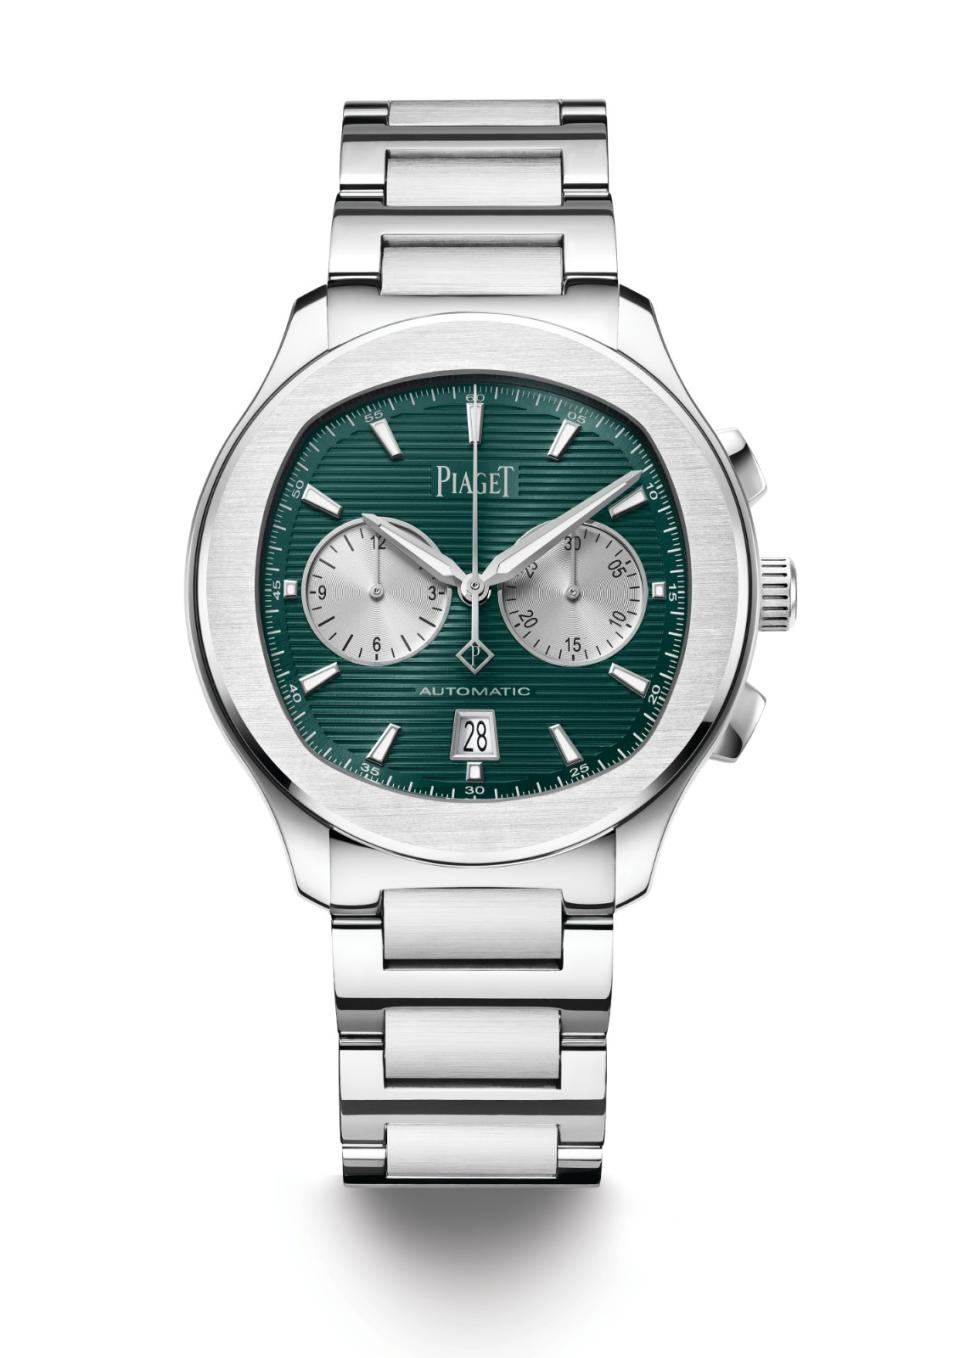 PIAGET Polo系列礦石綠自動上鍊計時碼錶，67萬元。伯爵提供